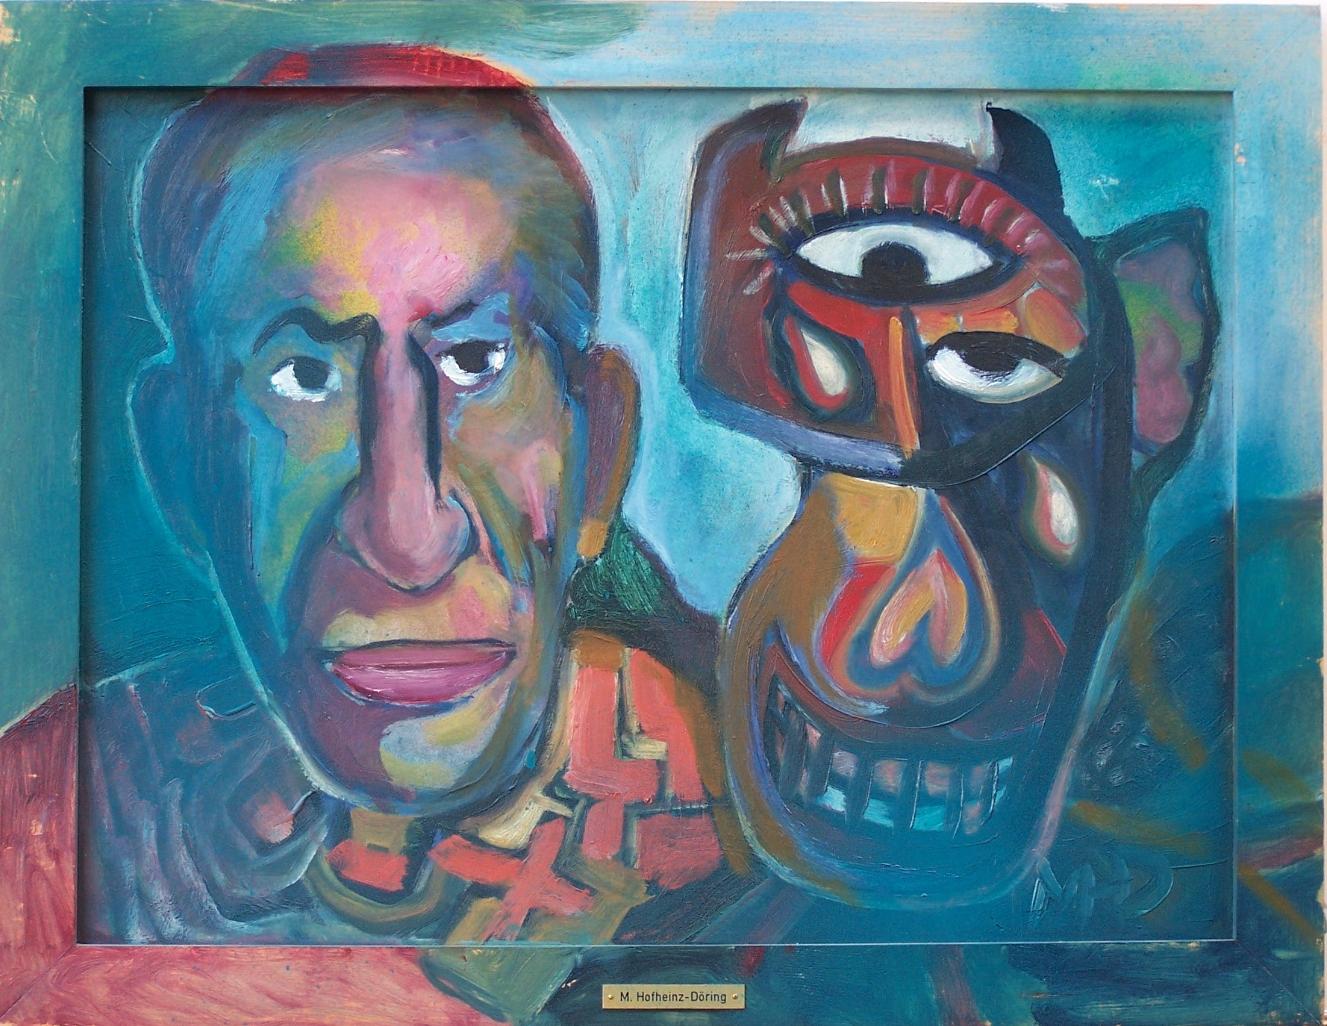 Picasso und Stiermaske (1970) by Margret Hofheinz-Doring